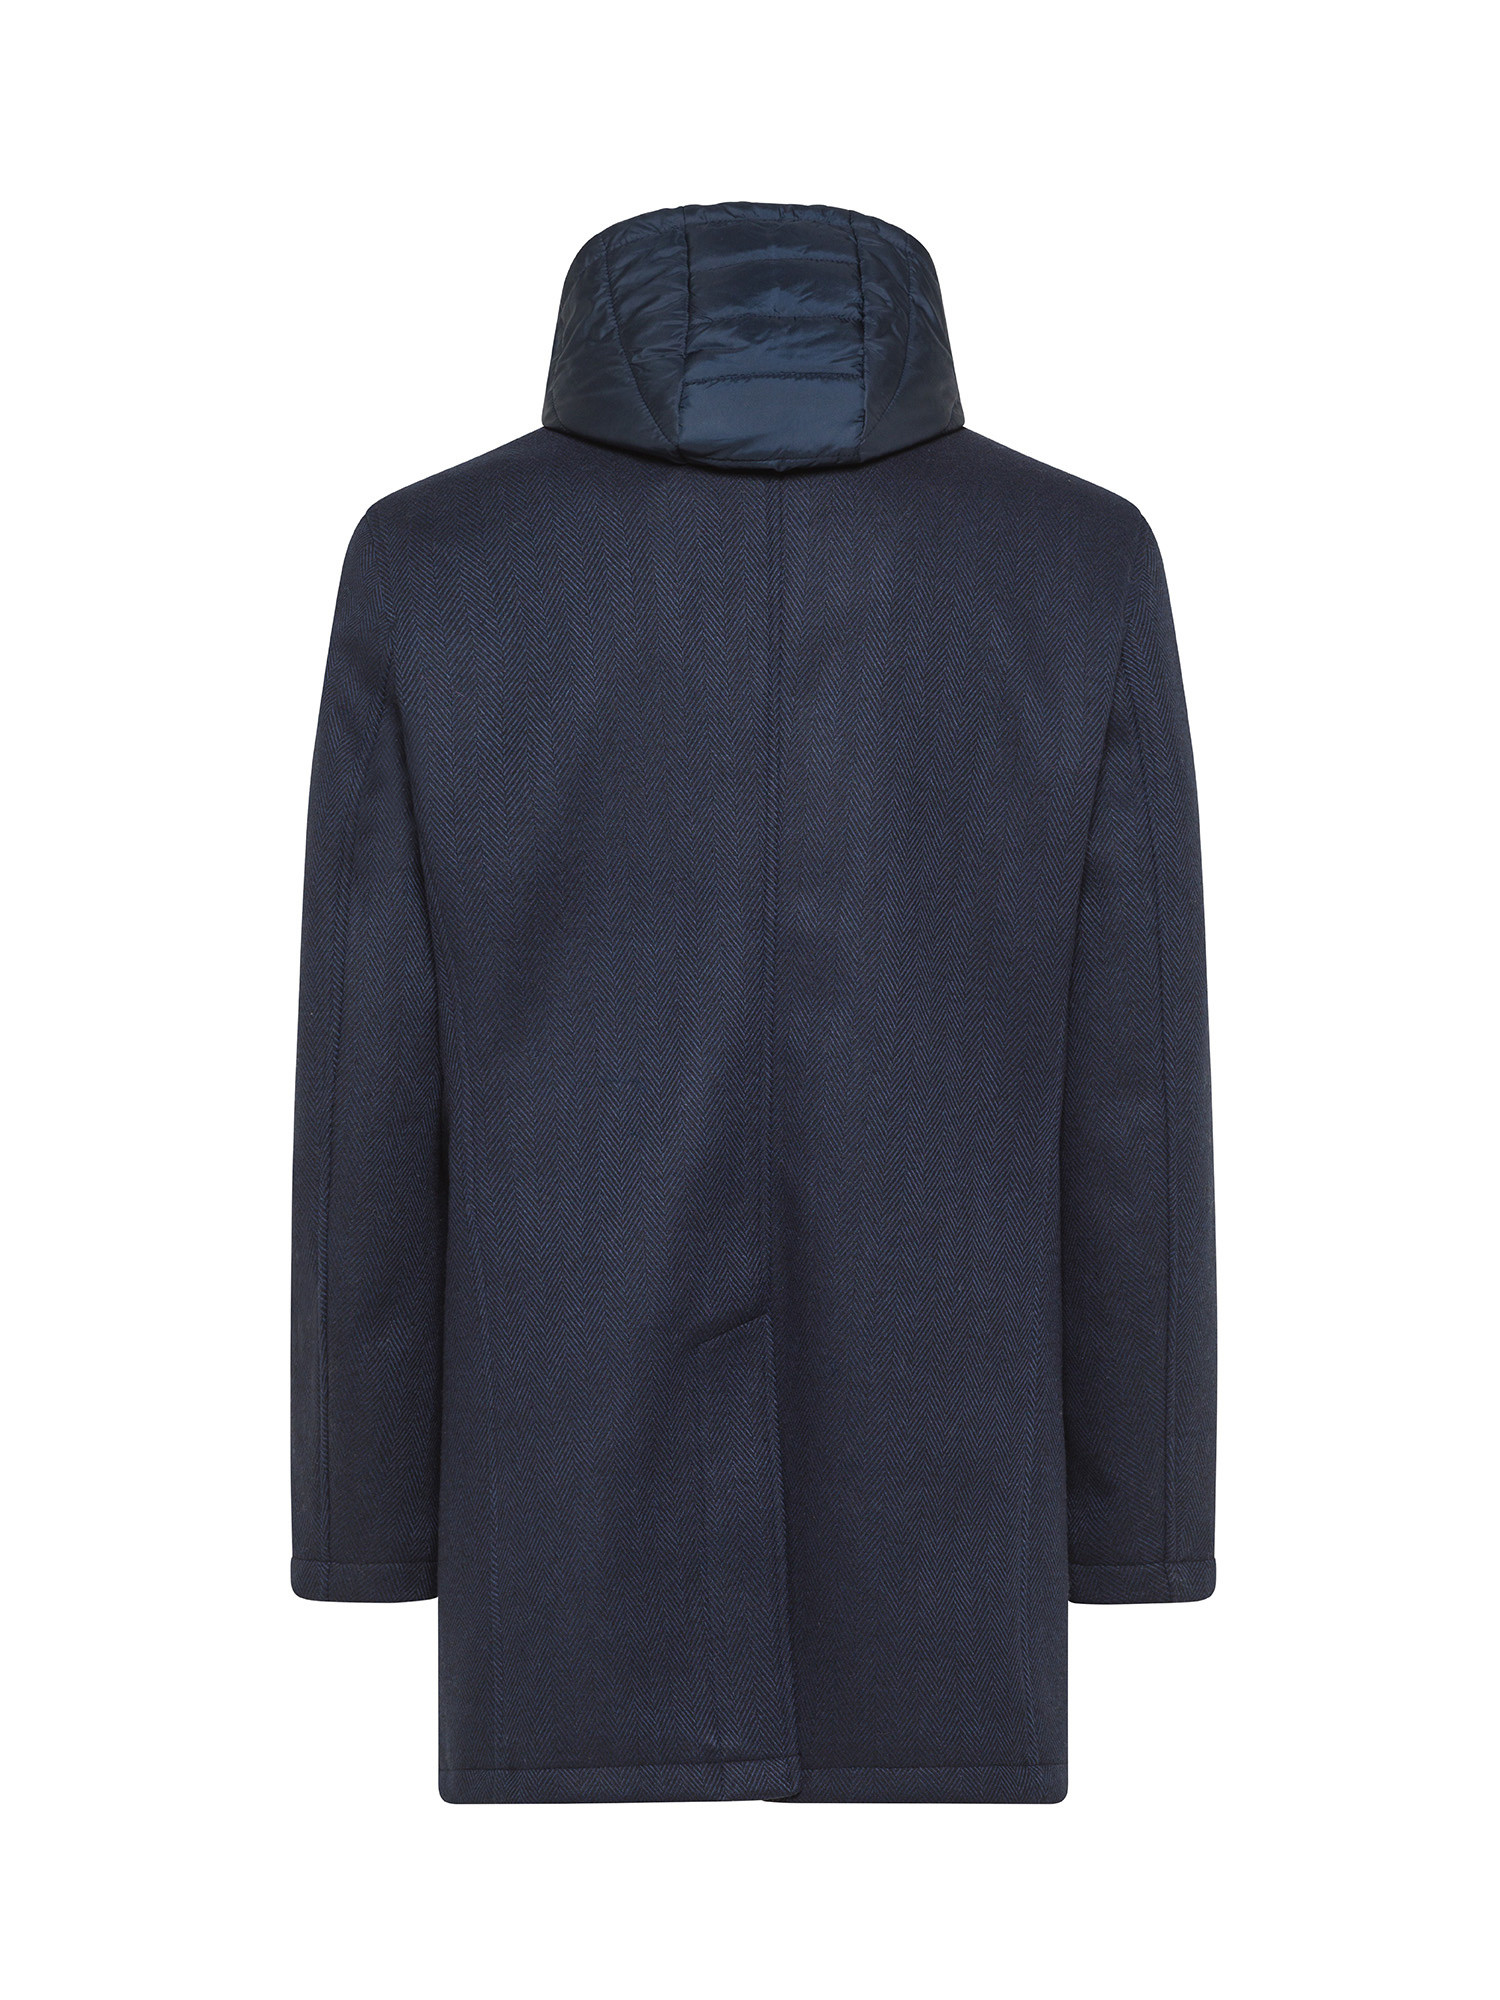 Luca D'Altieri - Cappotto monopetto con cappuccio effetto stampato, Blu, large image number 1